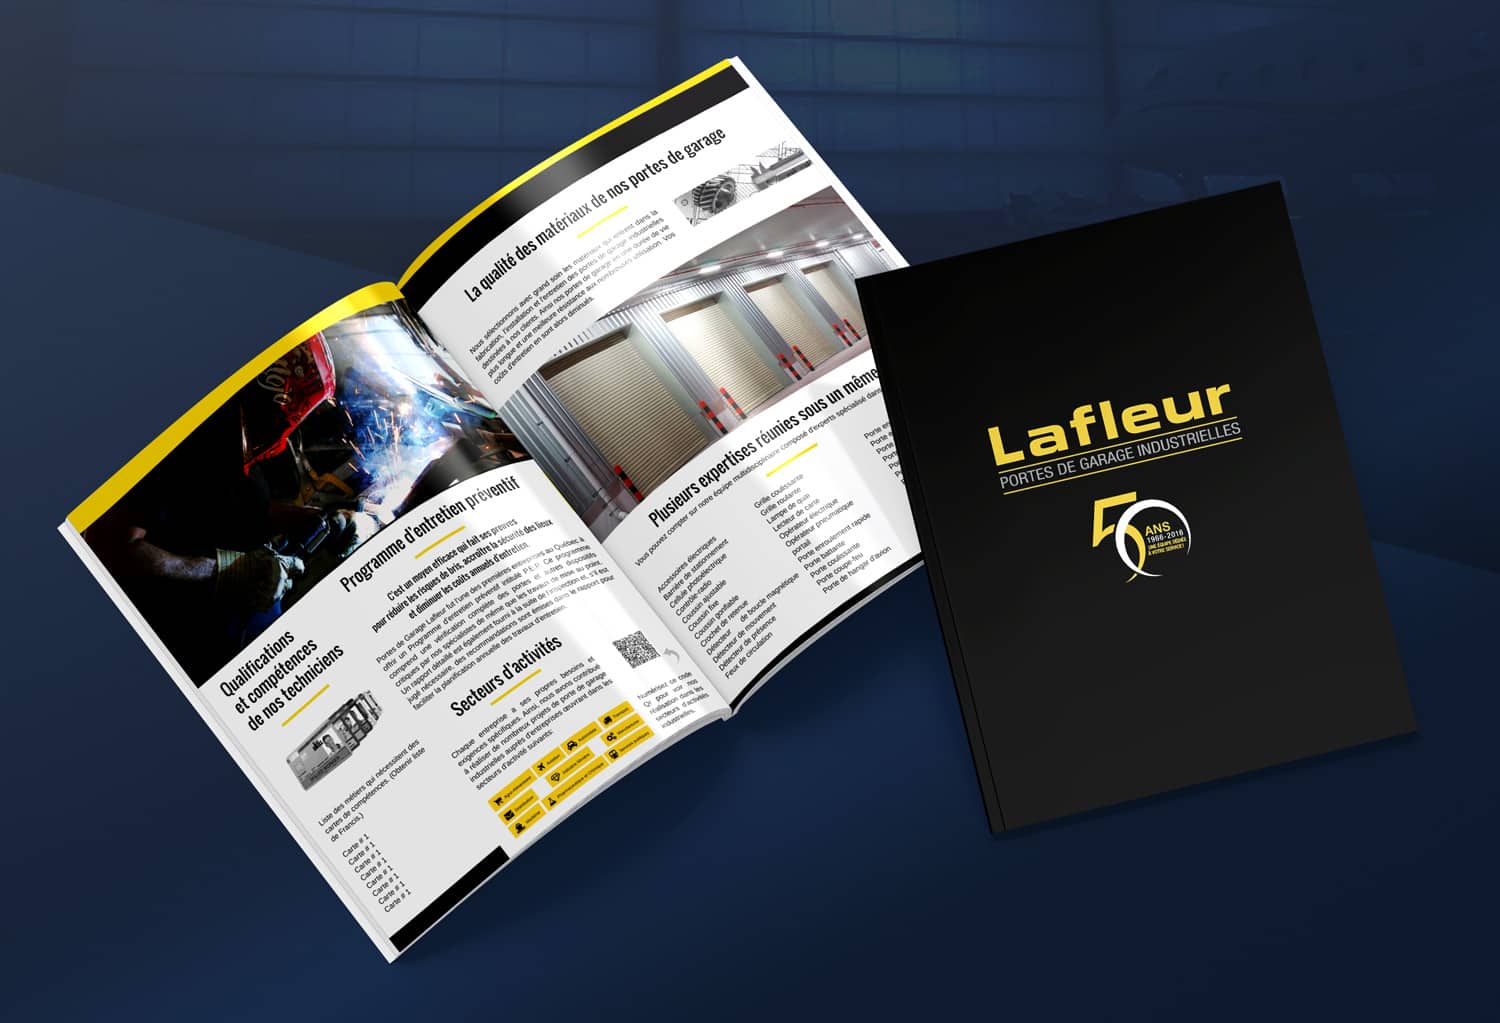 Portes-Garage-Lafleur-Brochure-by-KikDesign.ca